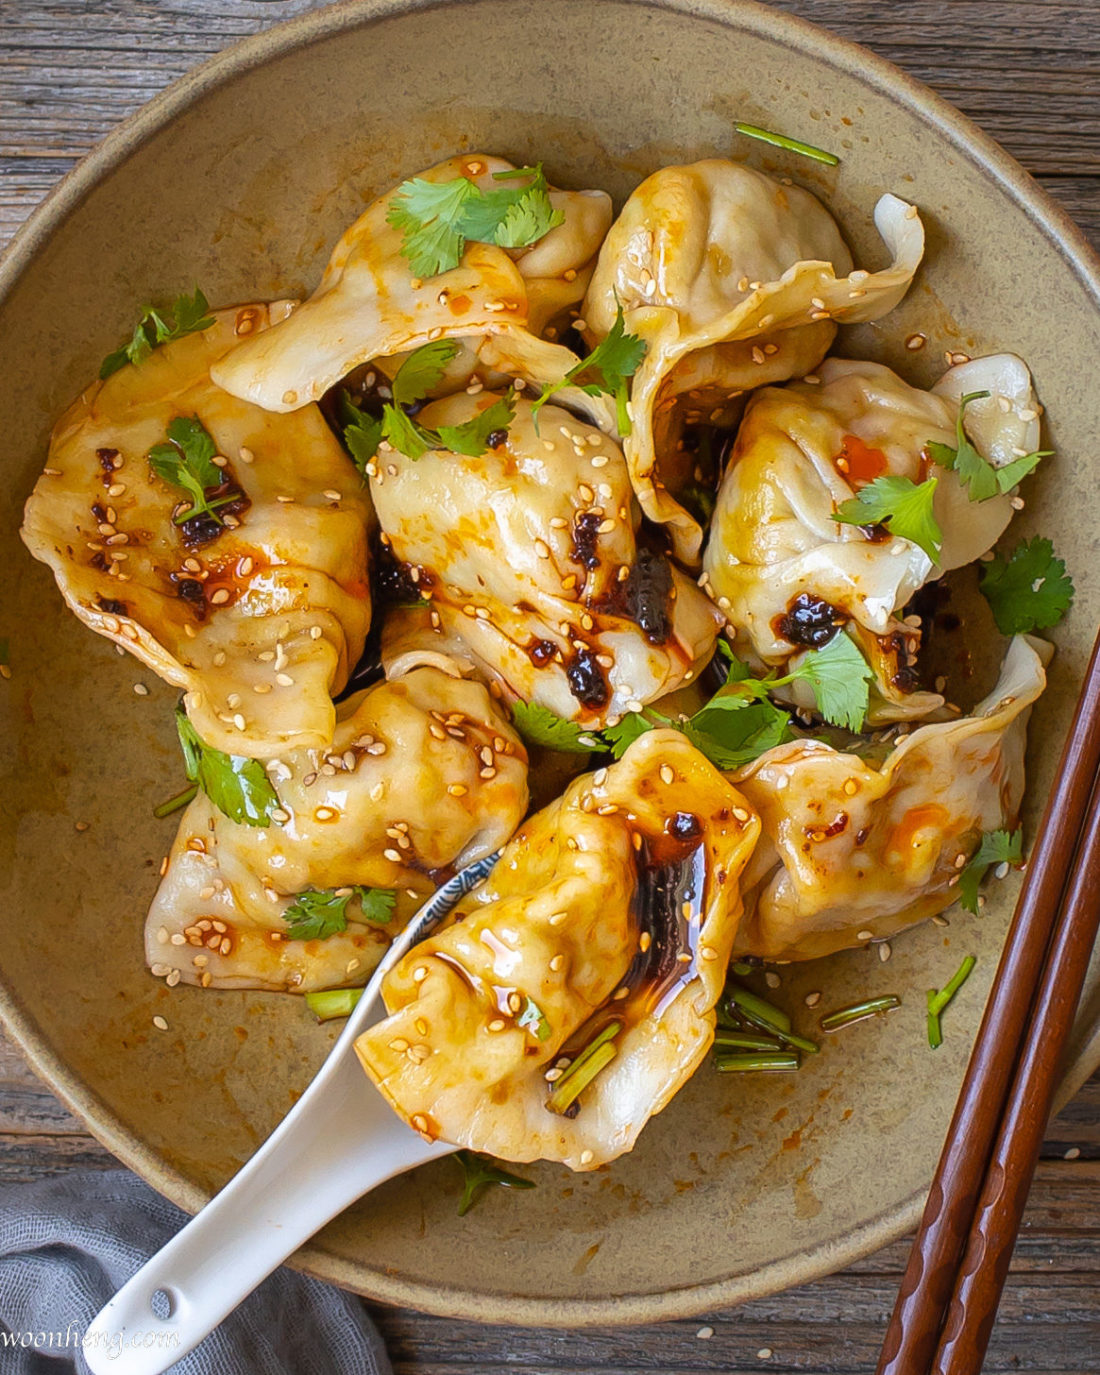 The Easy Vegan Vegetable Dumpling You Need - Jiao Zi - WoonHeng